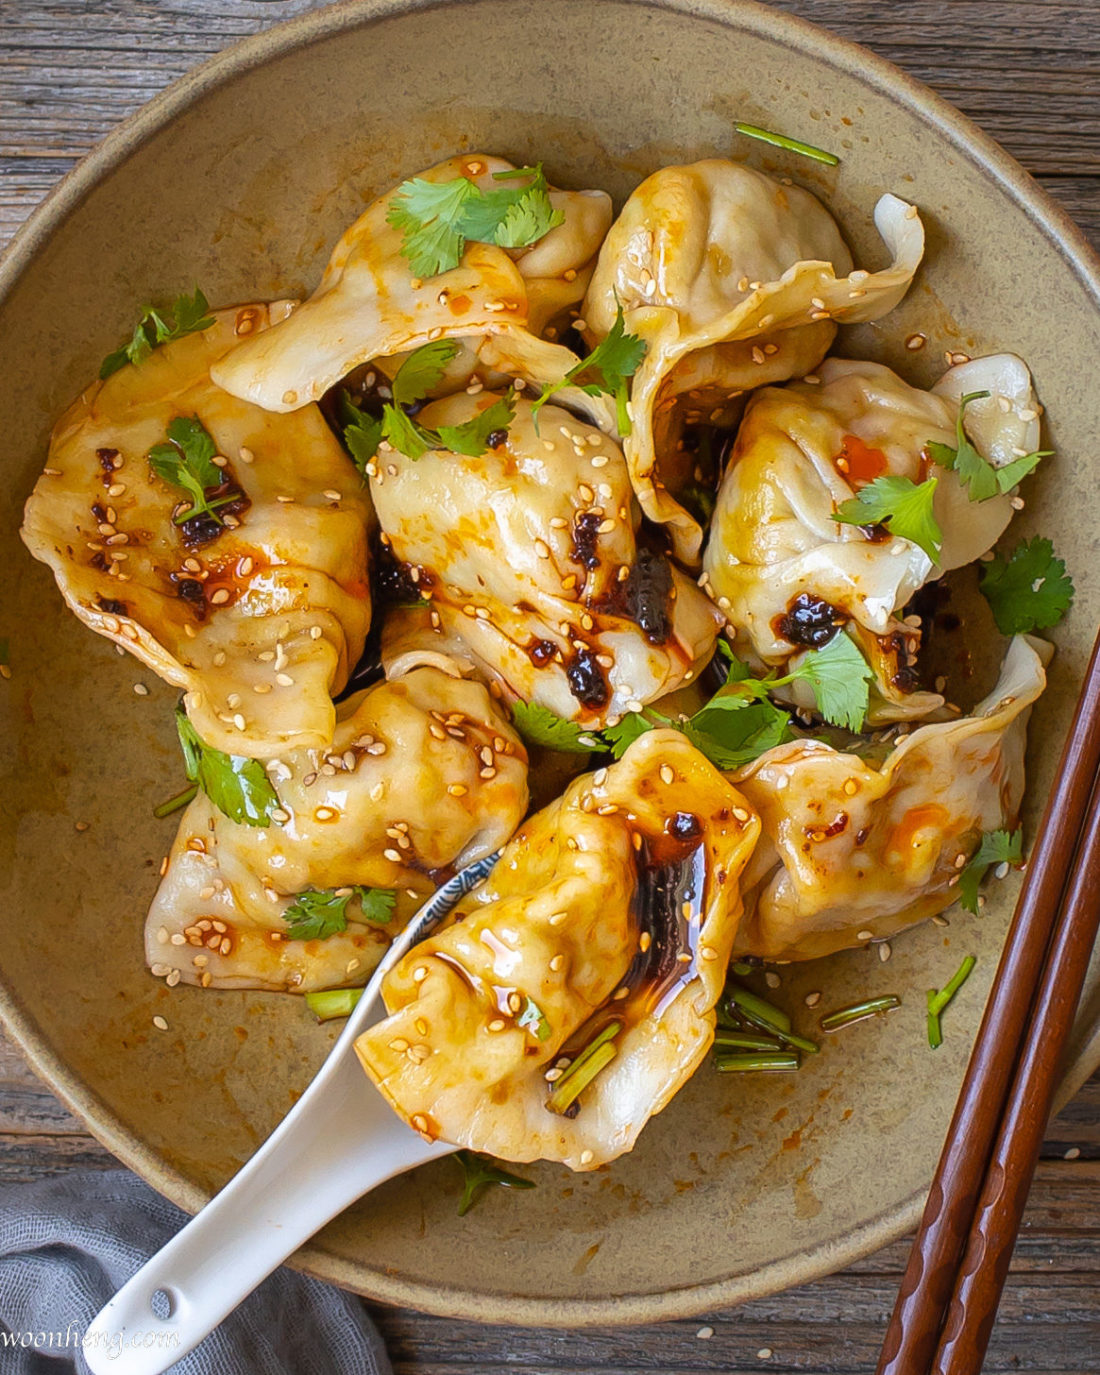 The Easy Vegan Vegetable Dumpling You Need - Jiao Zi - WoonHeng